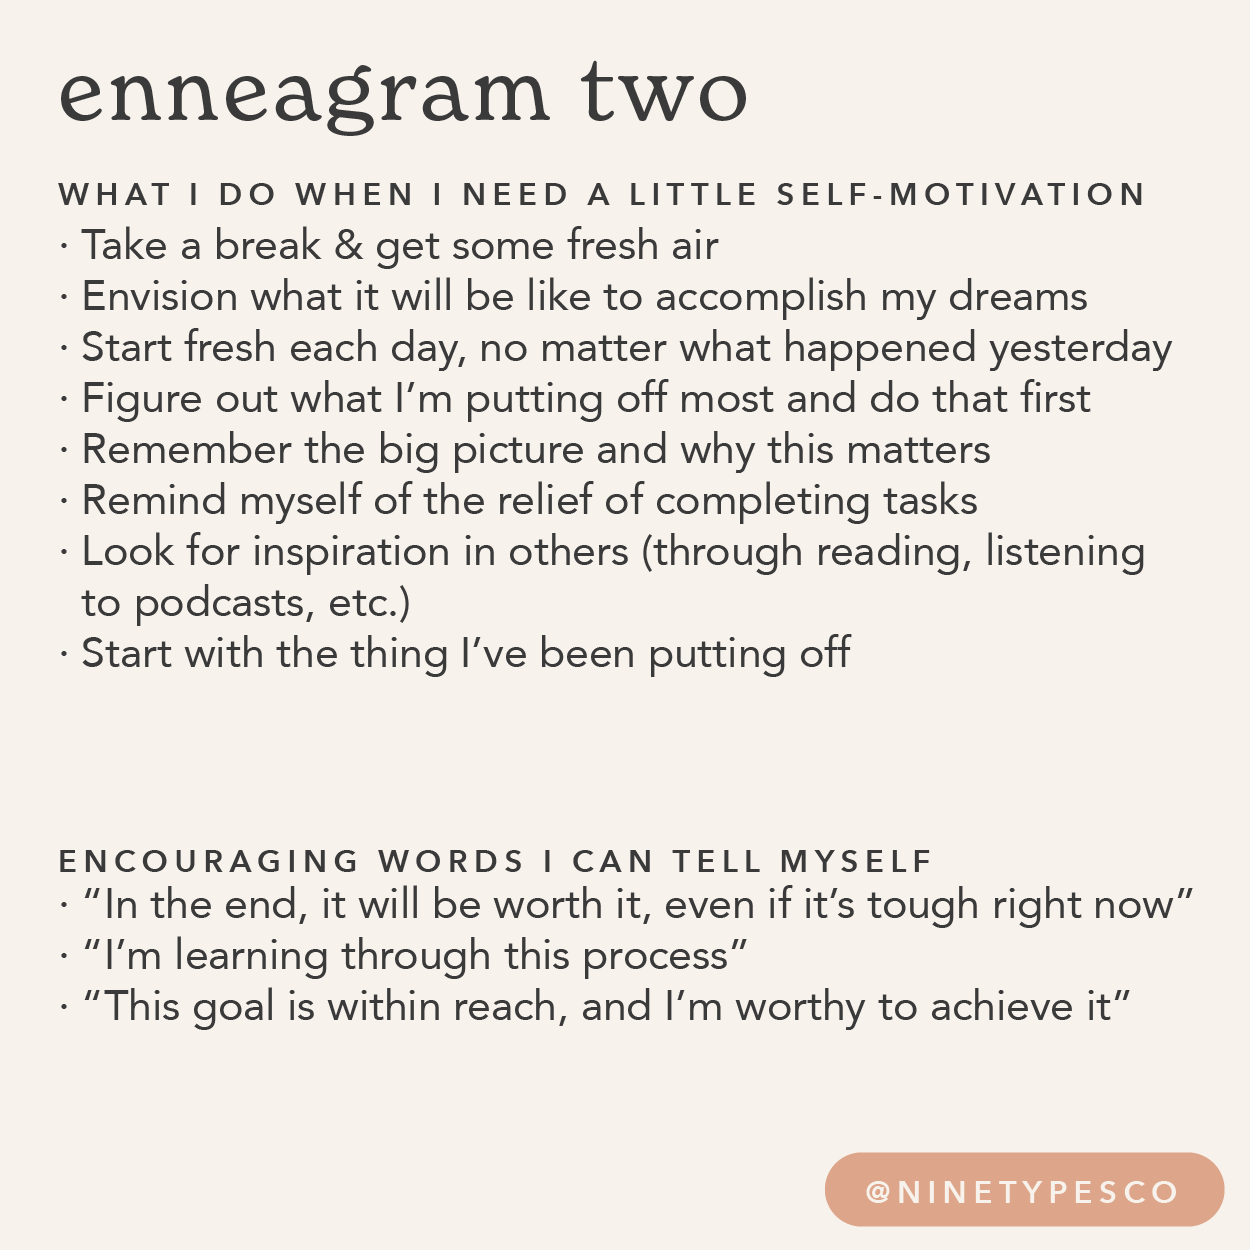 Feeling Motivated by Enneagram Type - Enneagram Two